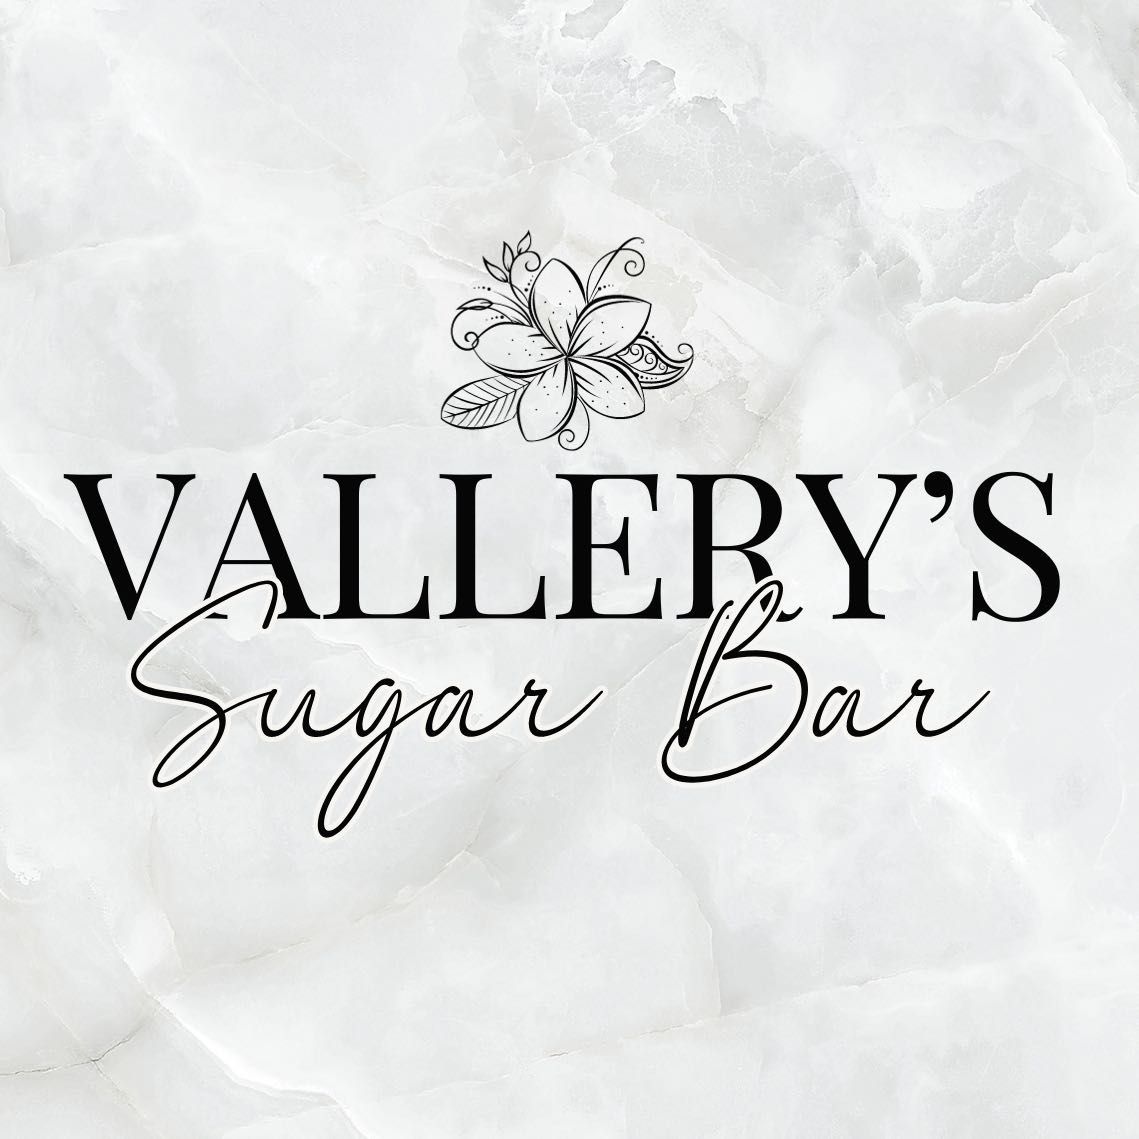 Vallery's Sugar Bar, Tużycka 12, Domofon: Salon; piętro 1, drzwi po prawej stronie, 03-683, Warszawa, Targówek